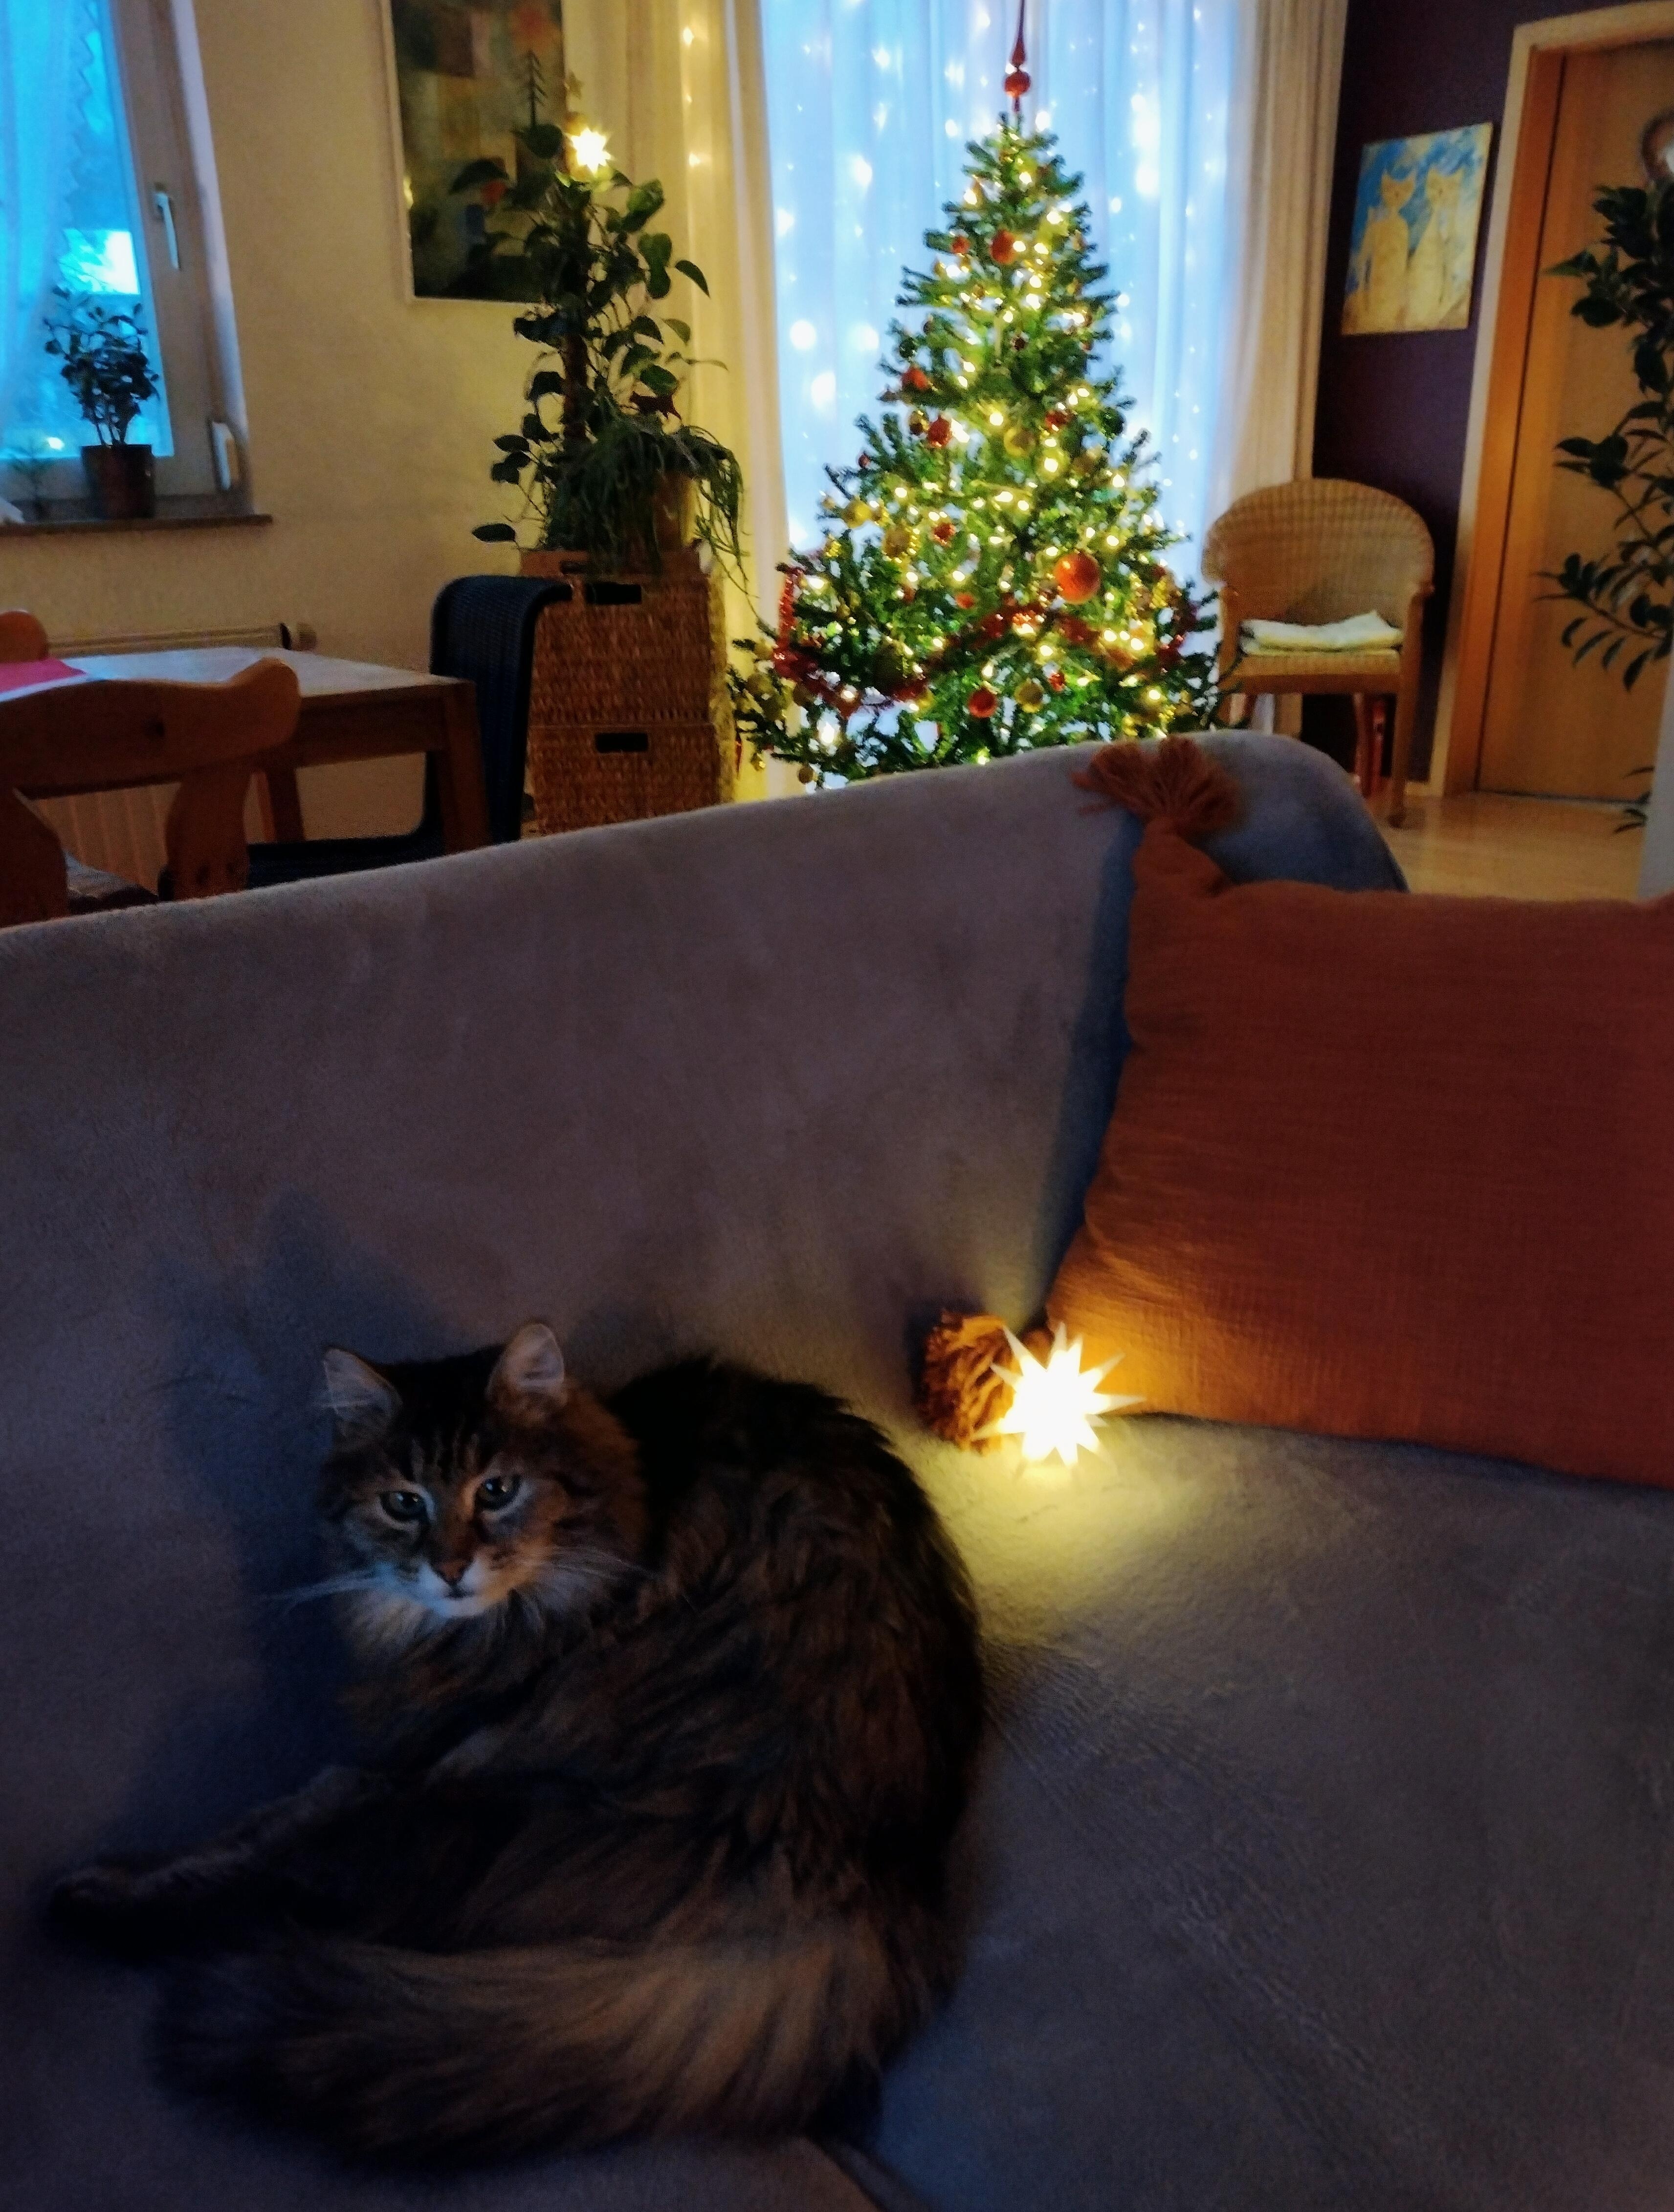 #advent #weihnachtlich #wohnzimner #katze #weihnachtsbaum #lichter #gemütlich